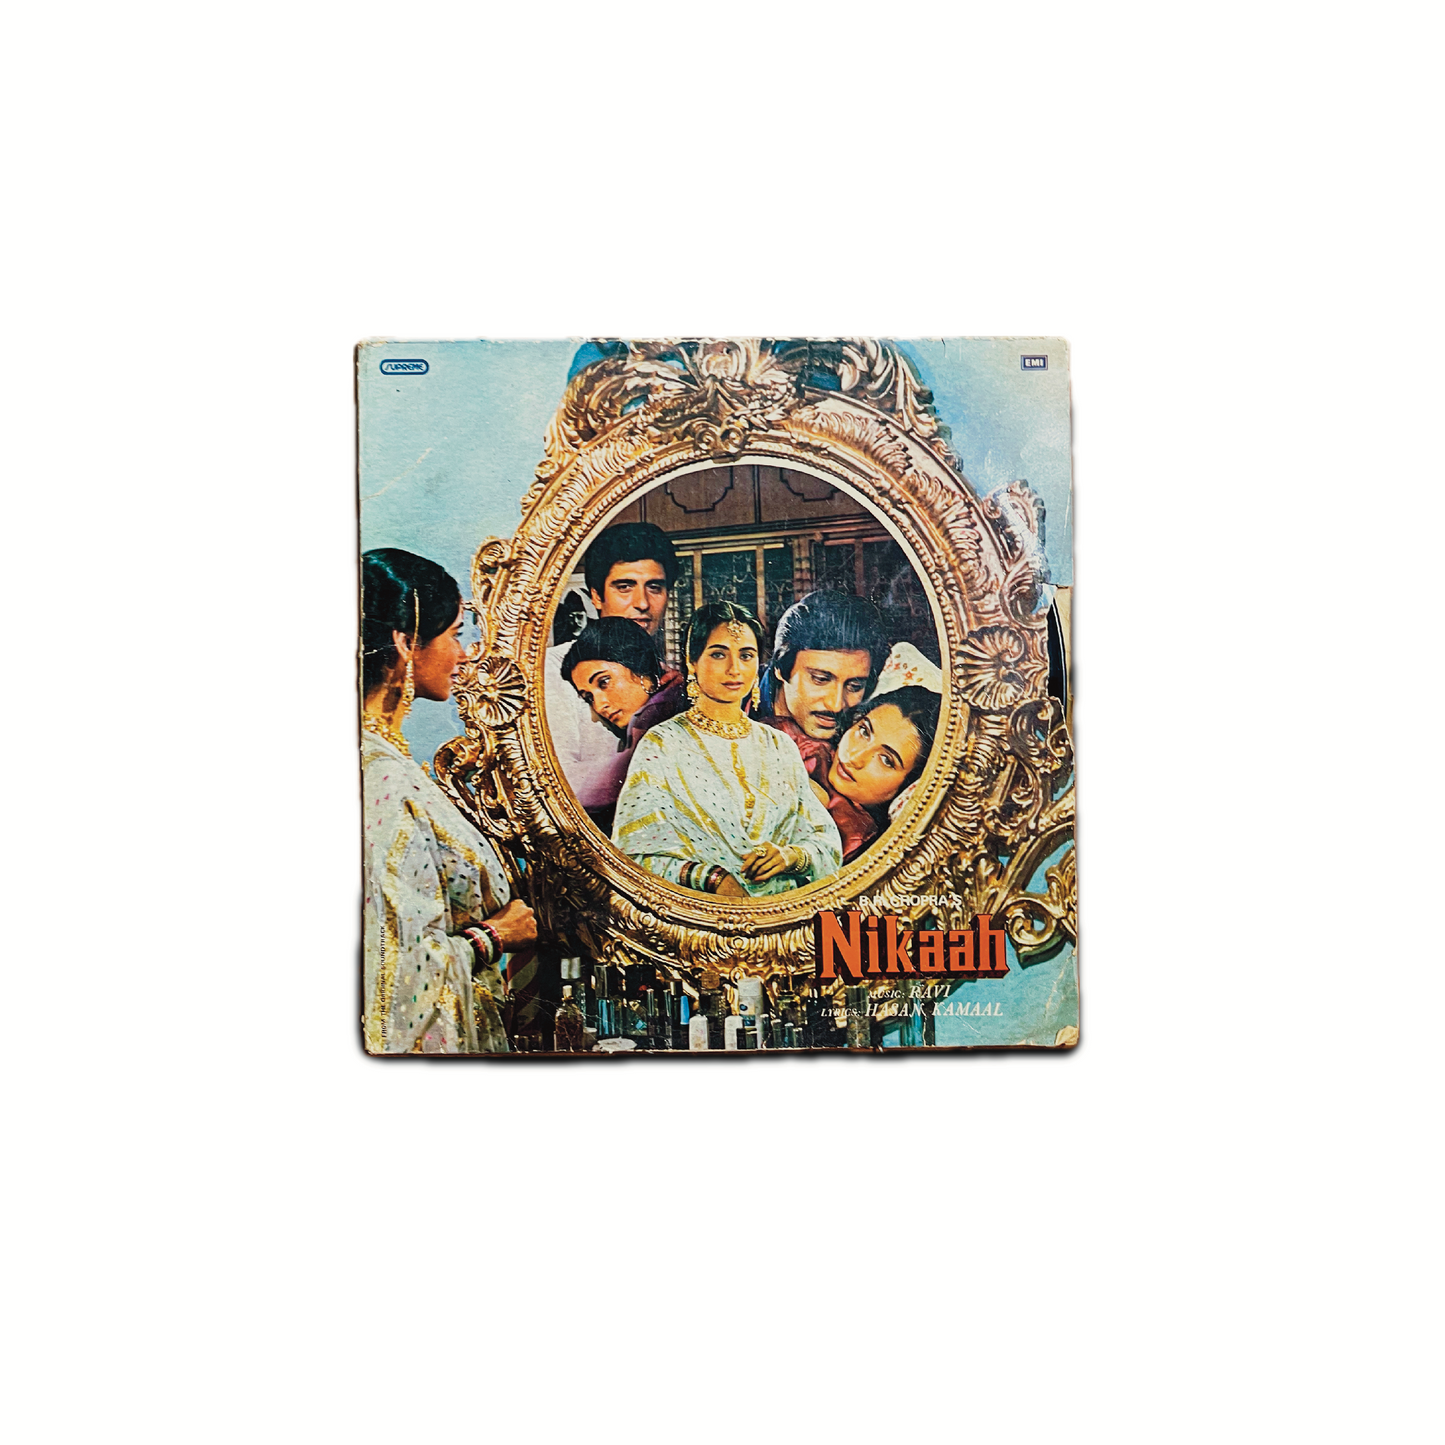 'NIKAAH' - VINTAGE VINYL LP RECORD 1982